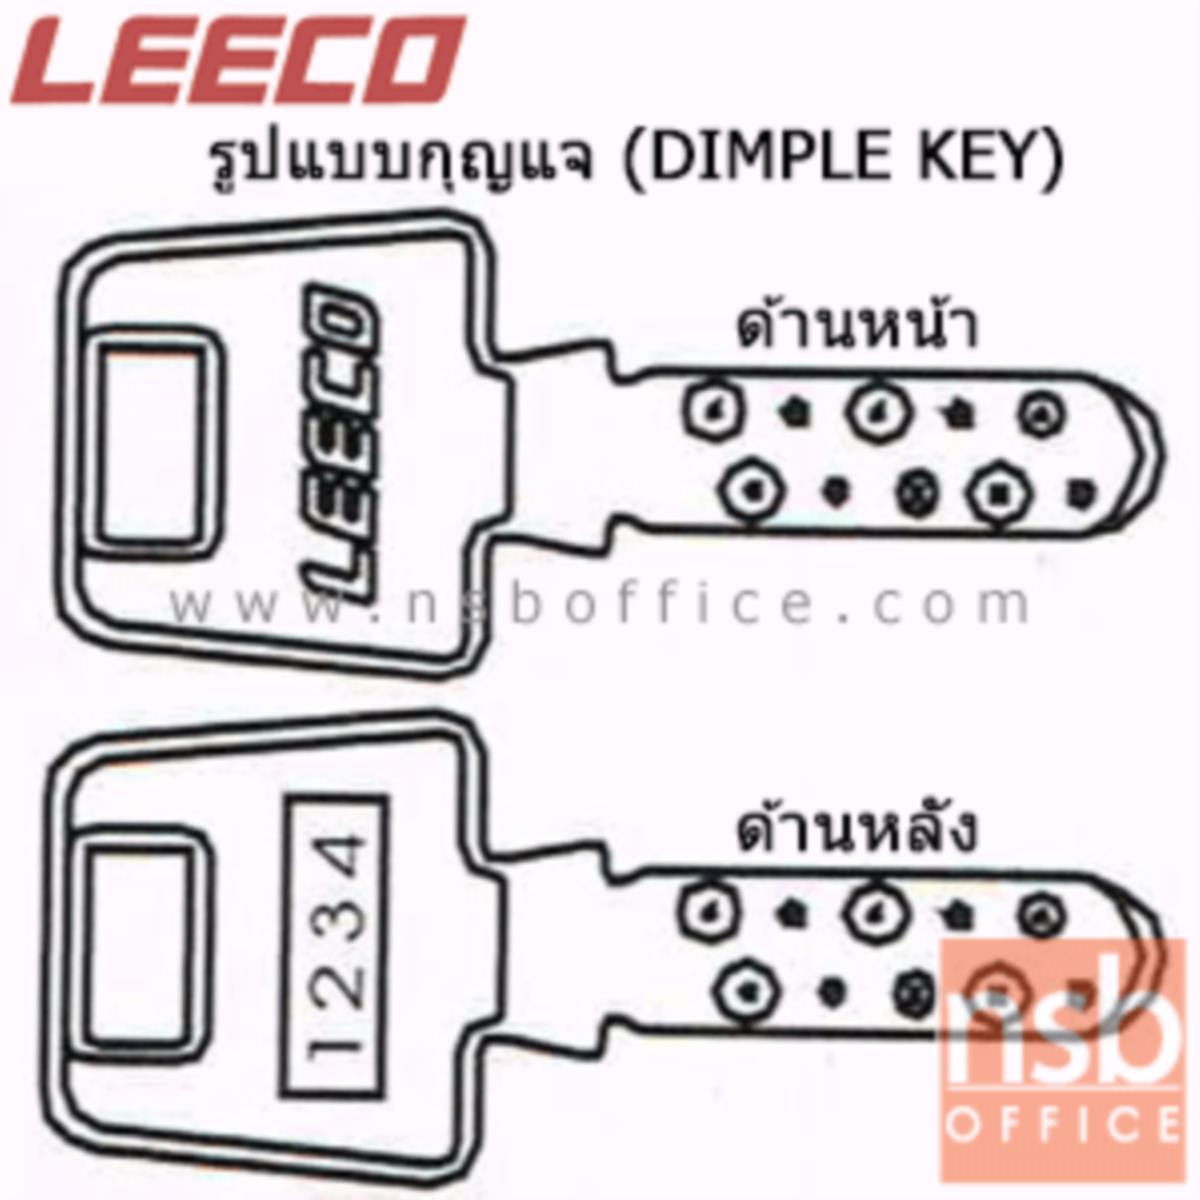 ตู้เซฟนิรภัย 350 กก. ลีโก้ รุ่น LEECO-703T มี 2 กุญแจ 1 รหัส (เปลี่ยนรหัสได้)   